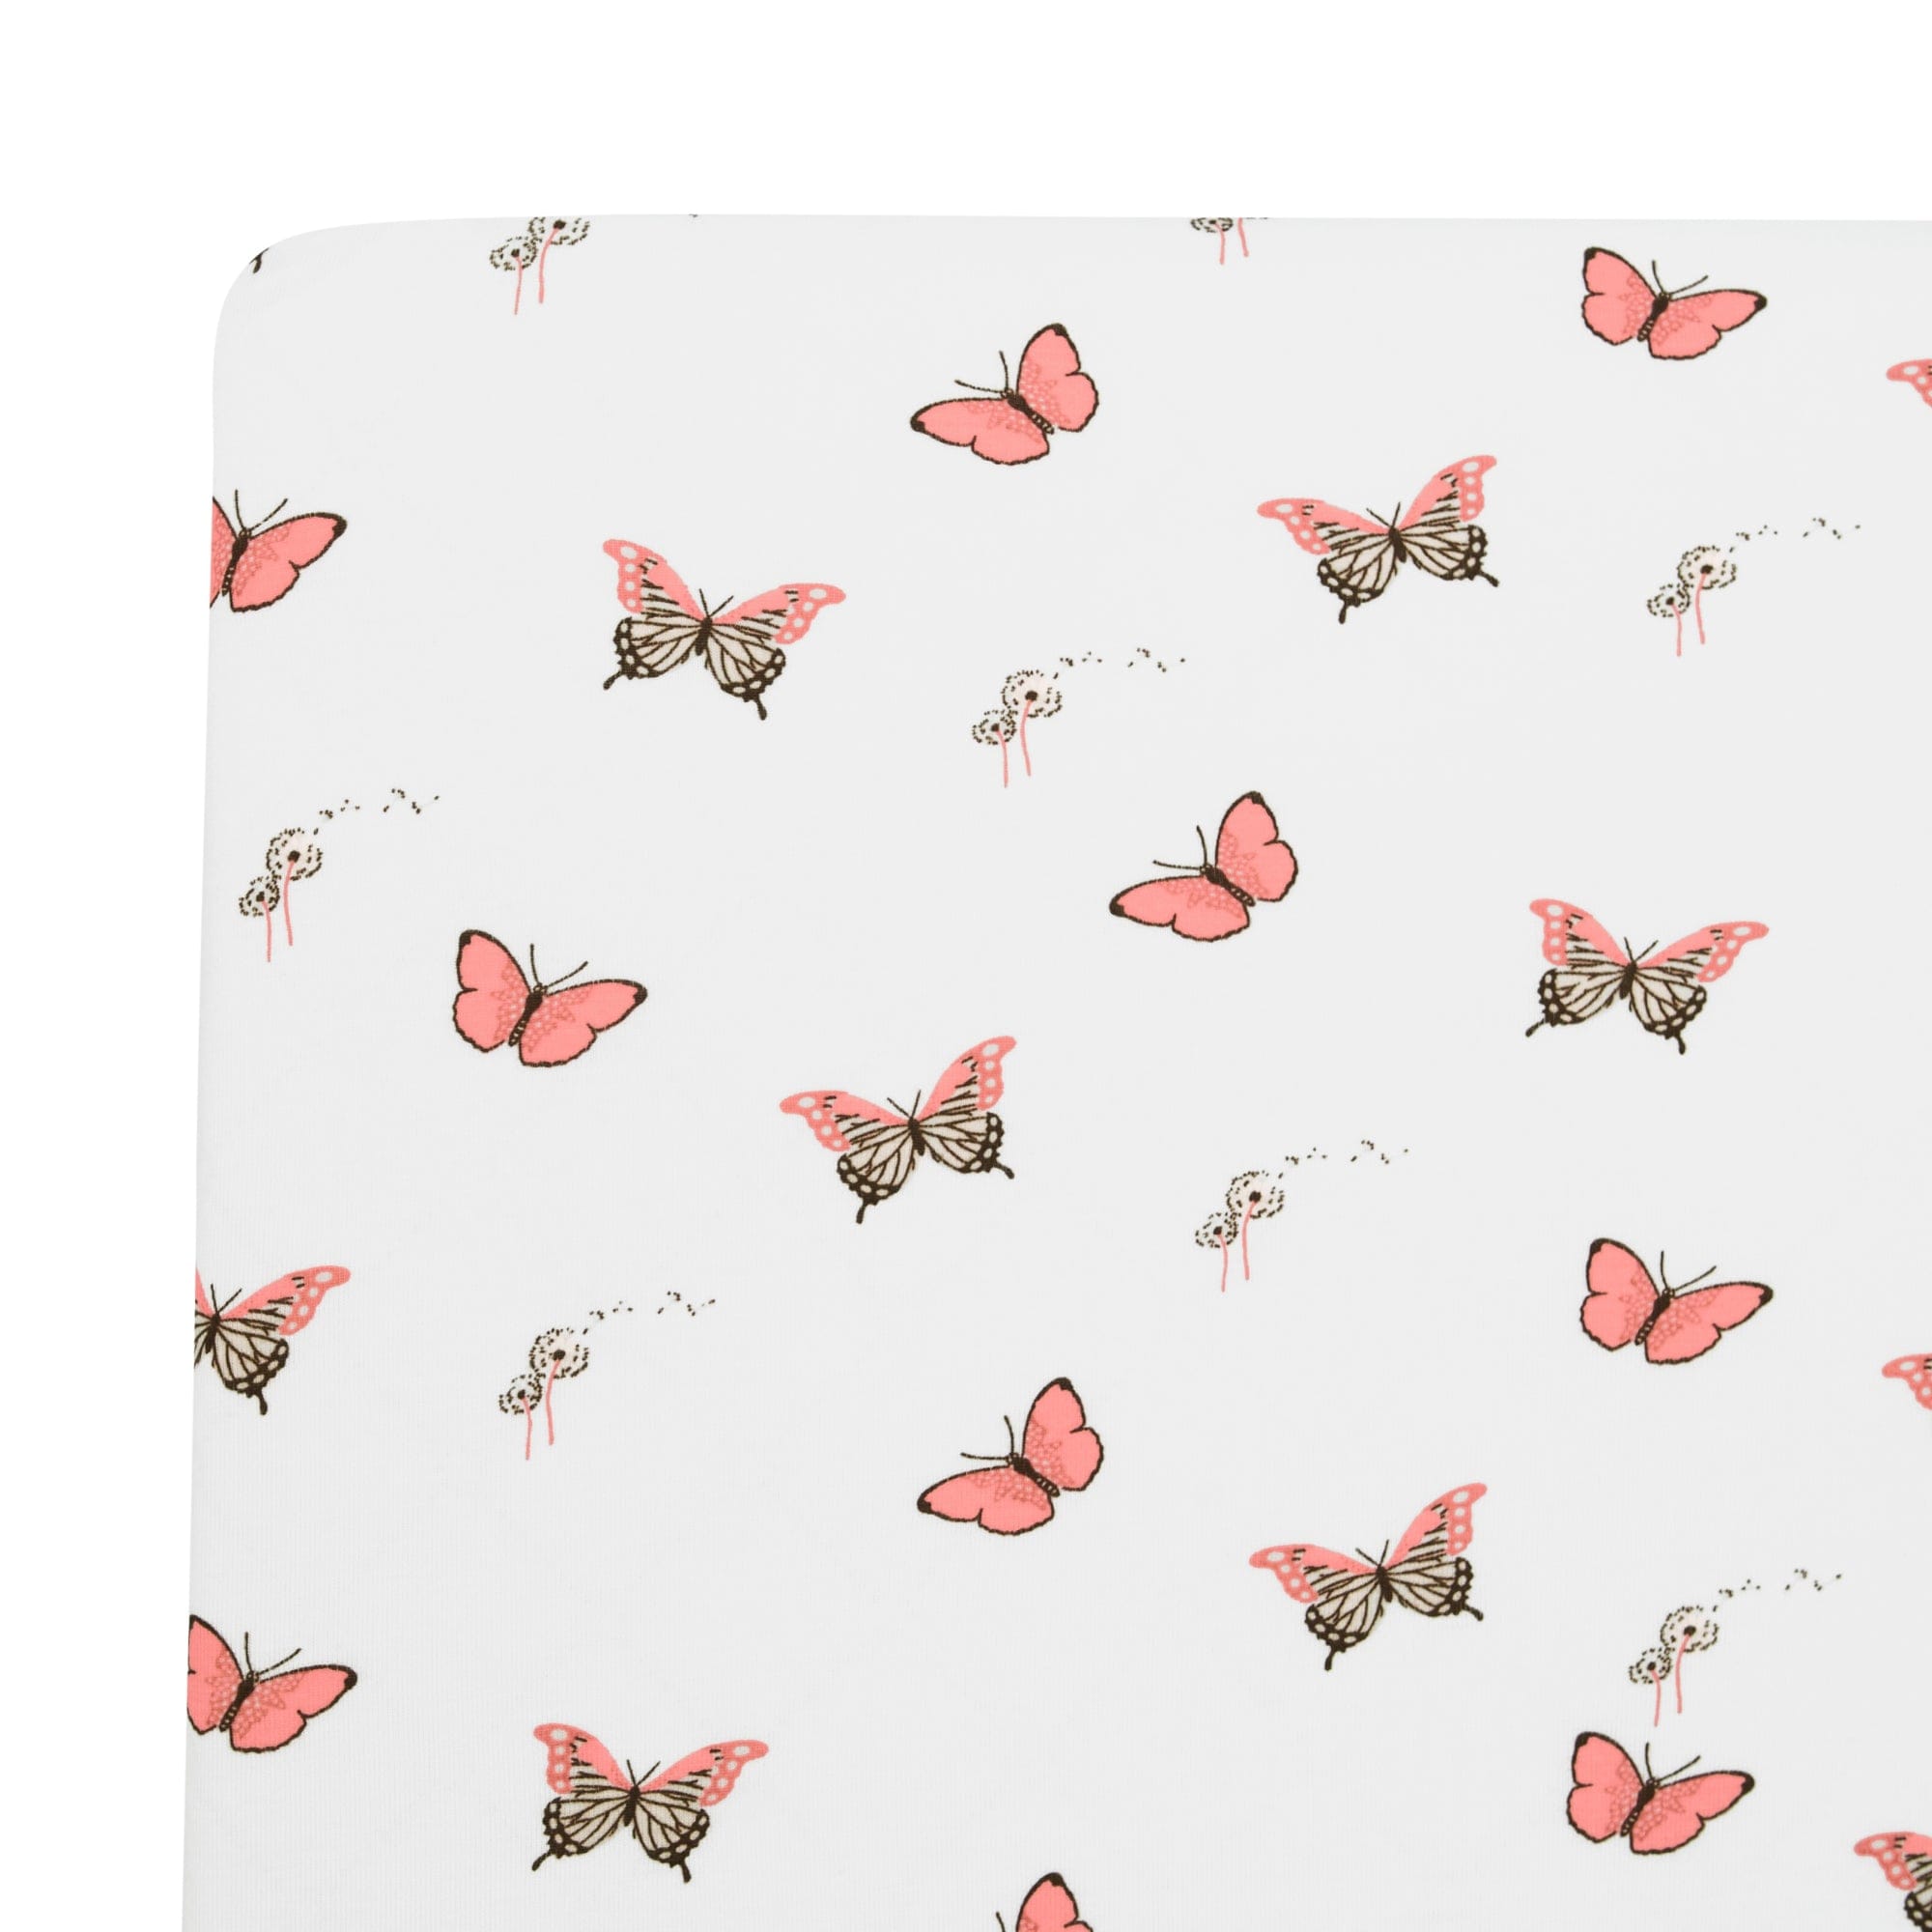 Kyte BABY Crib Sheet Butterfly / Twin Sheet Twin Sheet in Butterfly